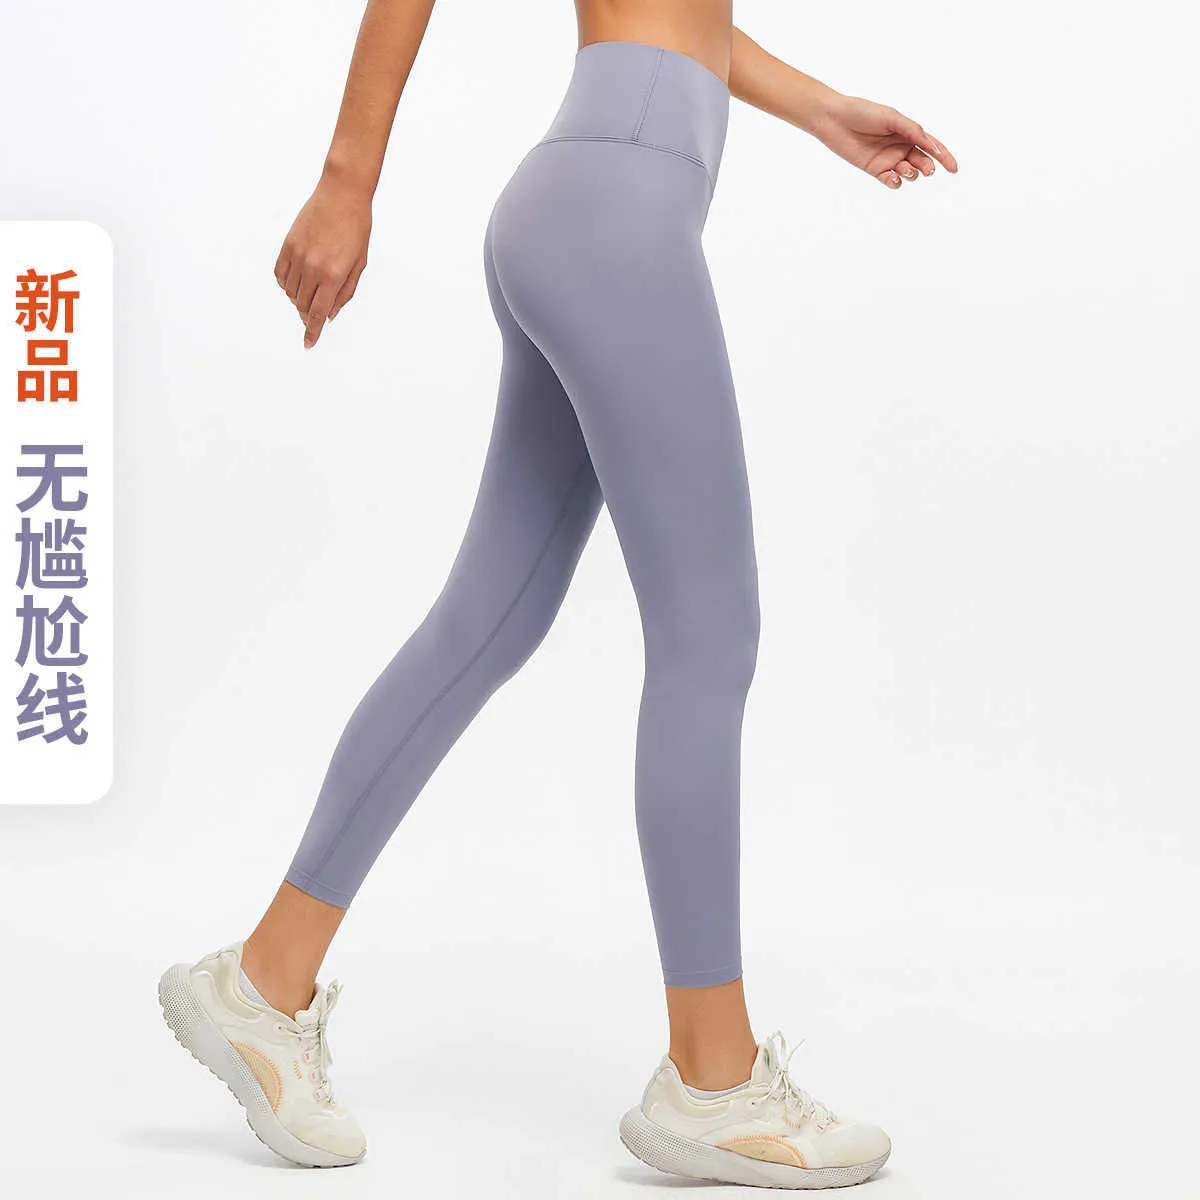 Brocade Dubbel sida Polerade Yoga Byxor För Kvinnors Naken Känsla Gym Kläder Hög Midja Leggings Workout Running Fitness Tights